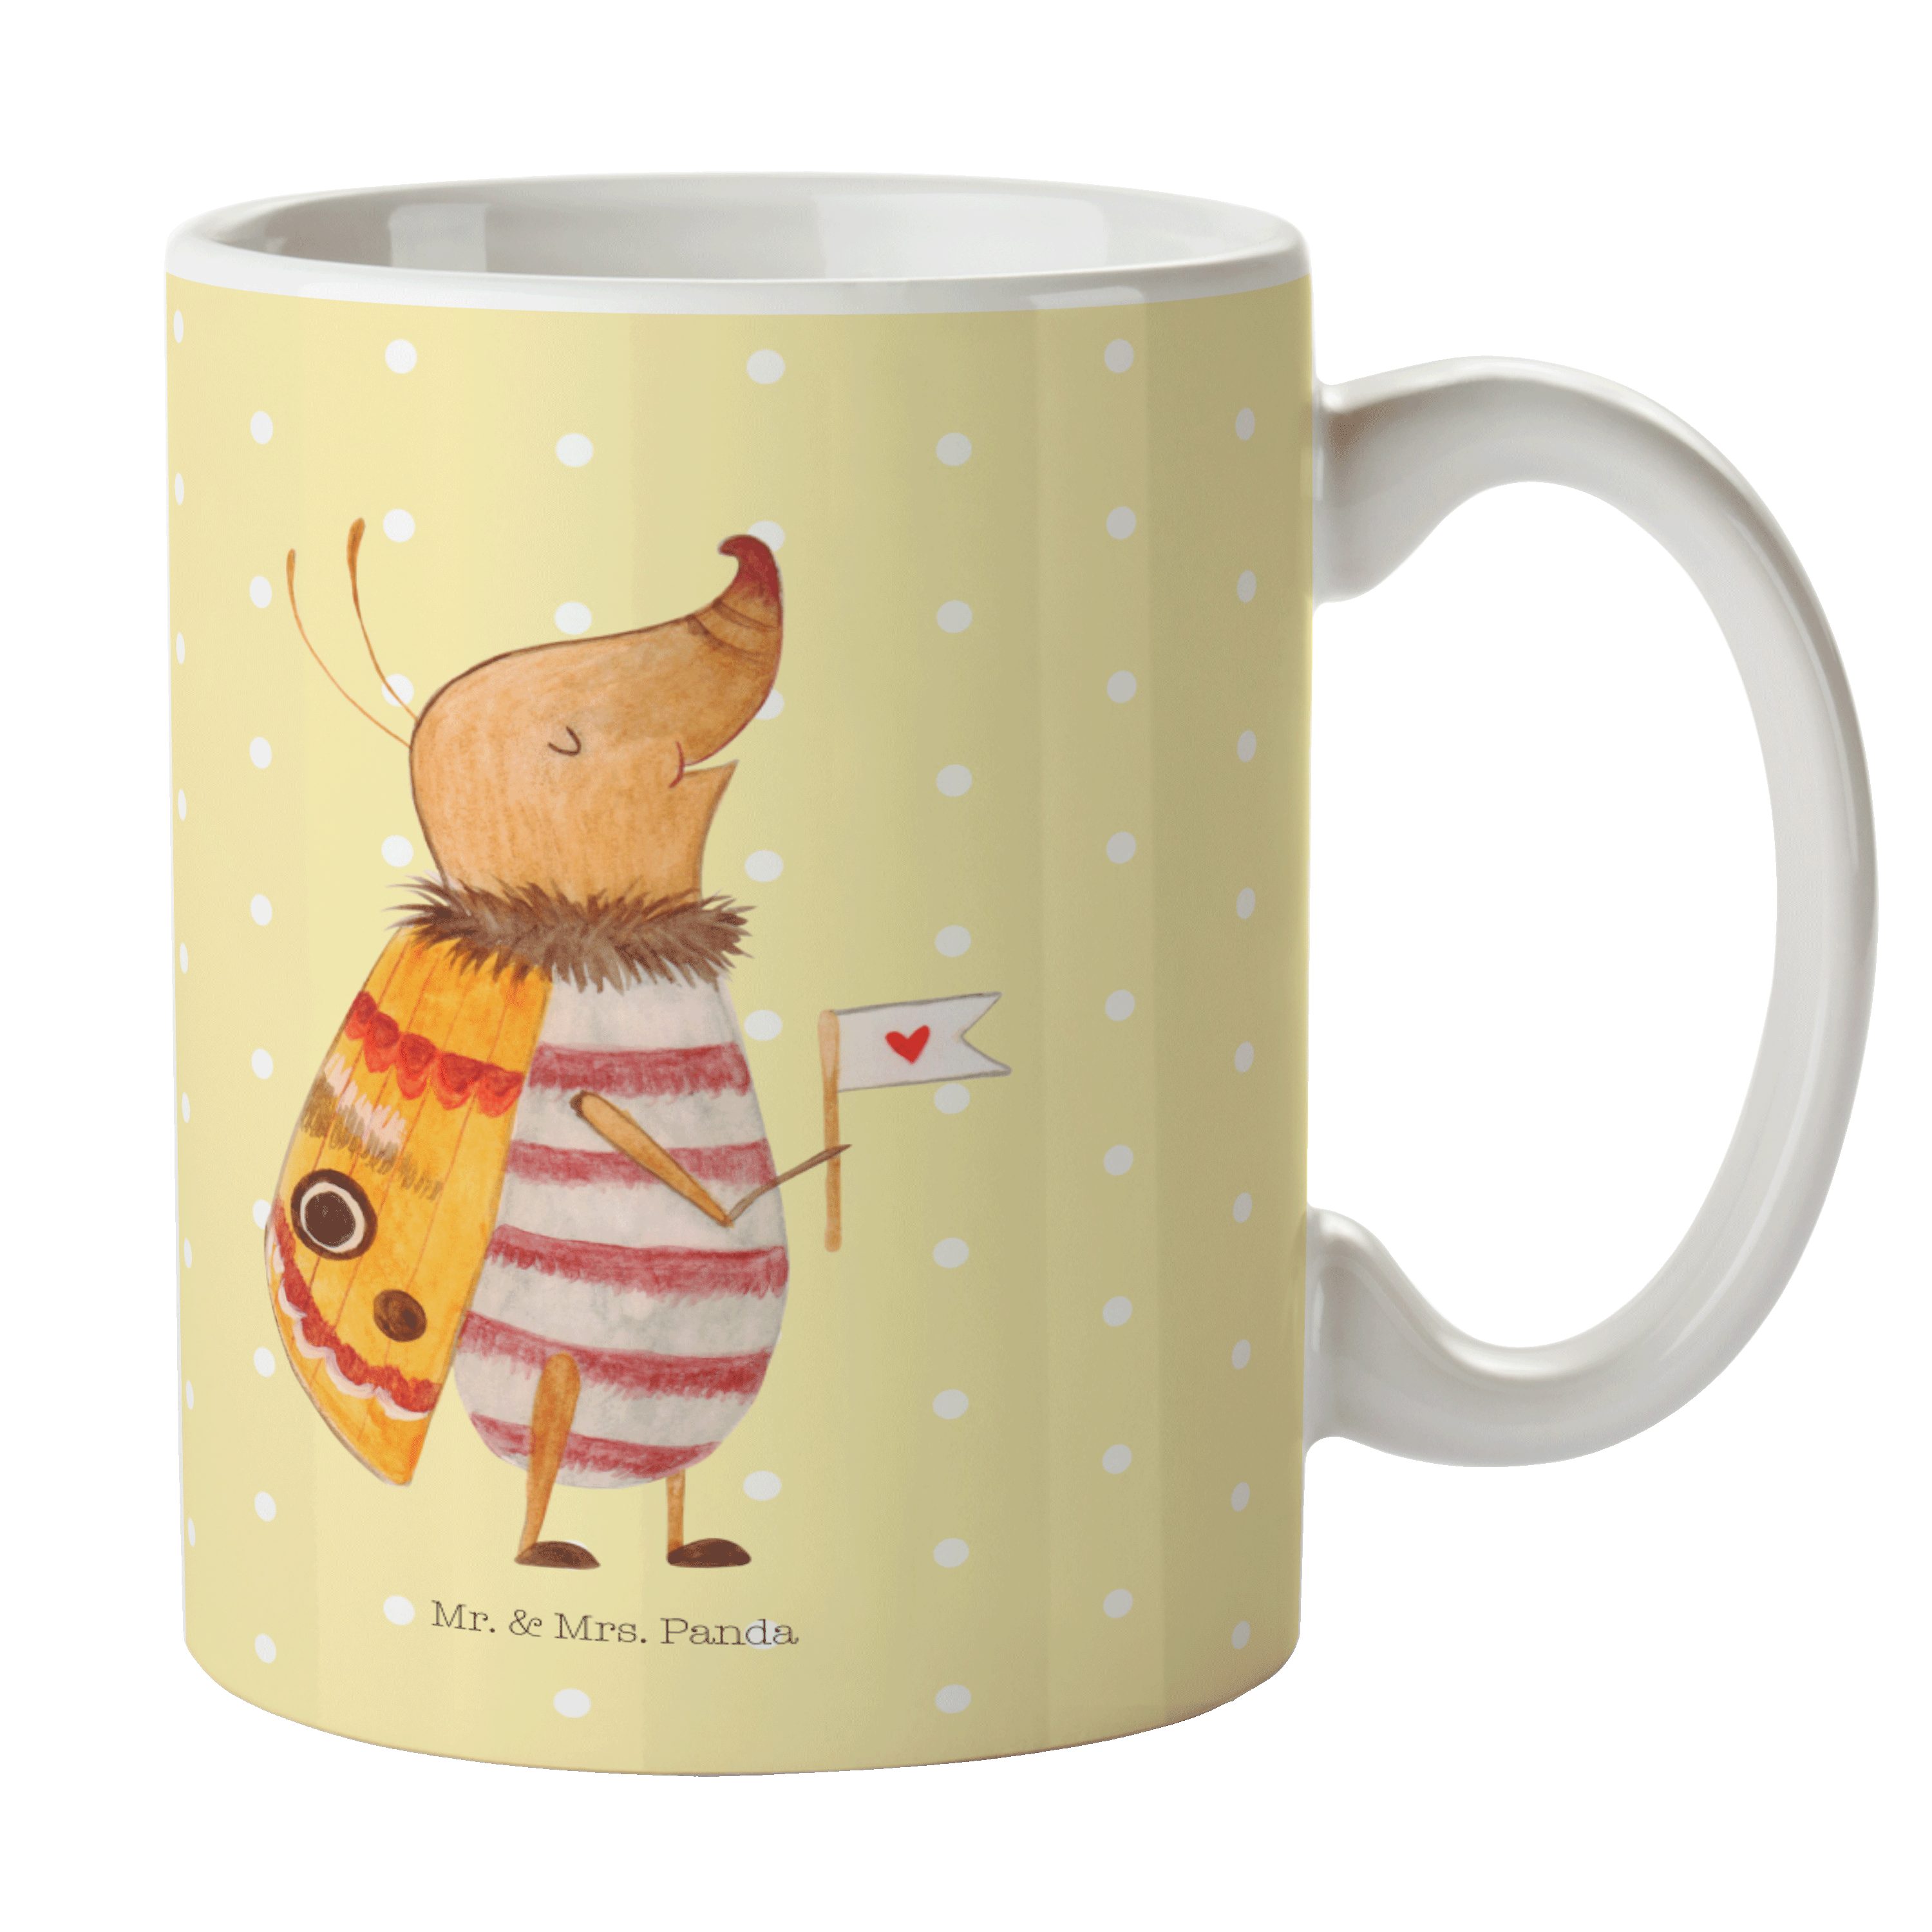 Mr. & Mrs. Panda Tasse Nachtfalter mit Fähnchen - Gelb Pastell - Geschenk, Tasse Sprüche, Wa, Keramik